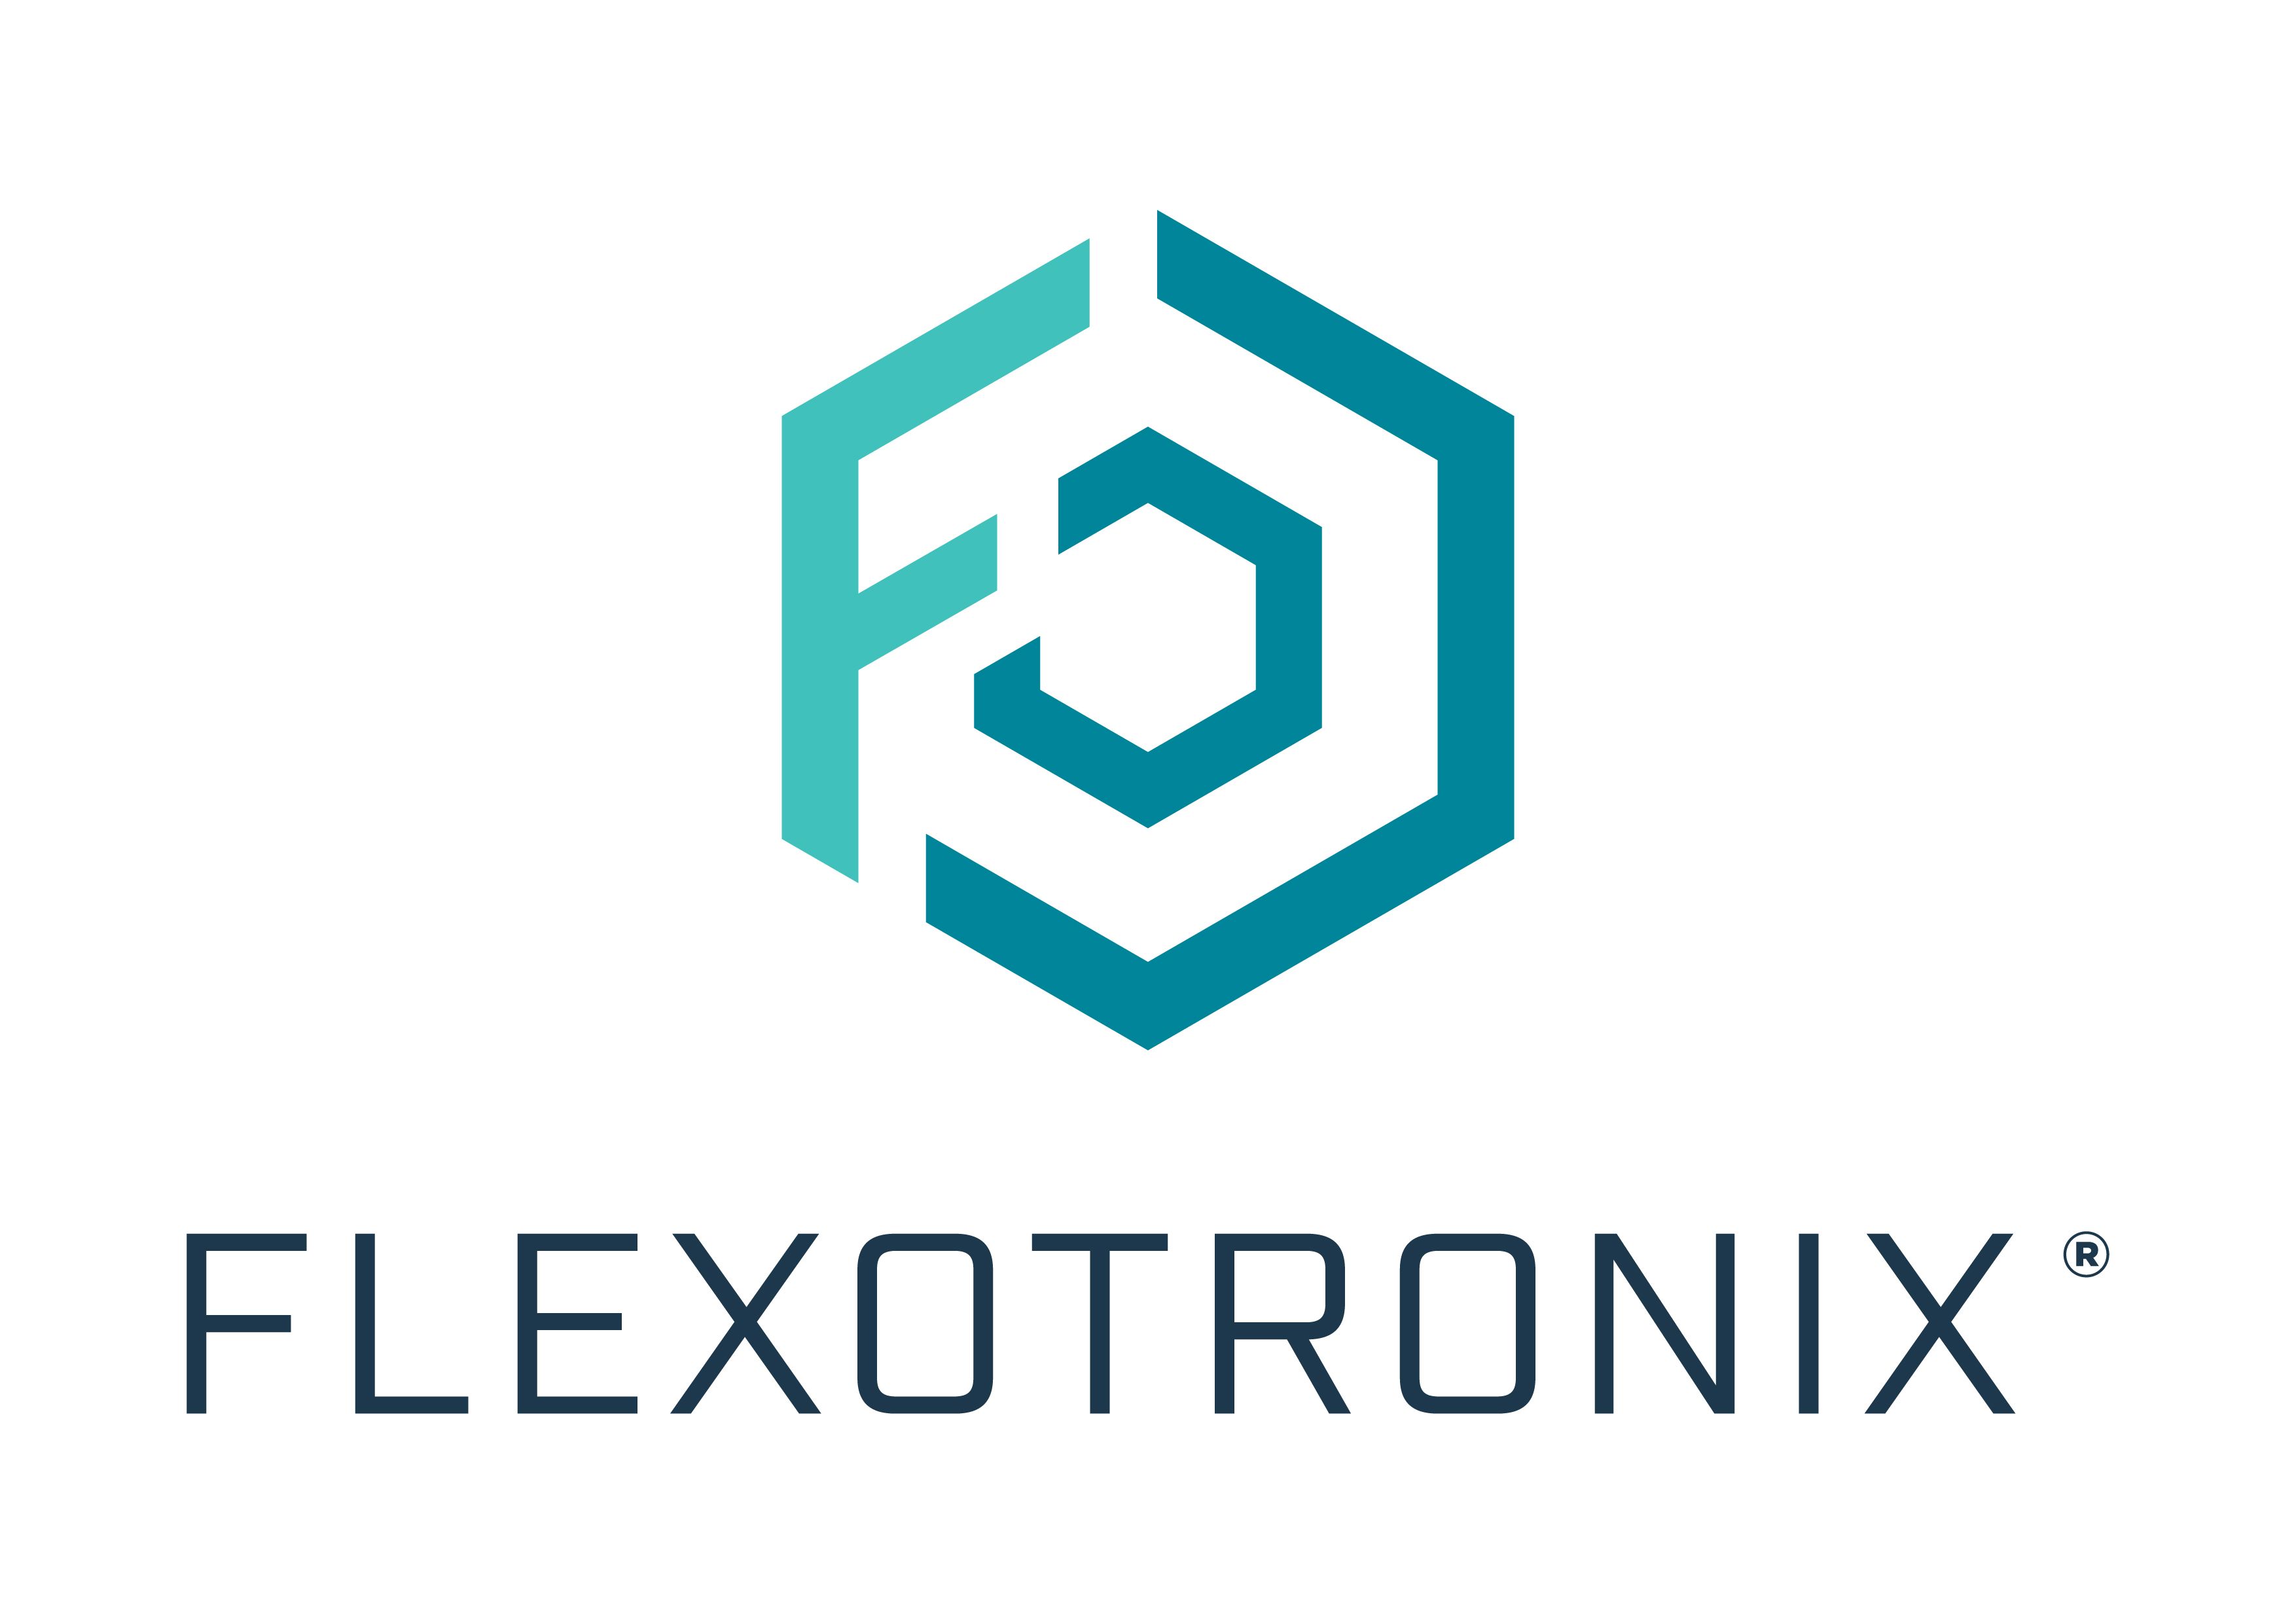 Flexotronix